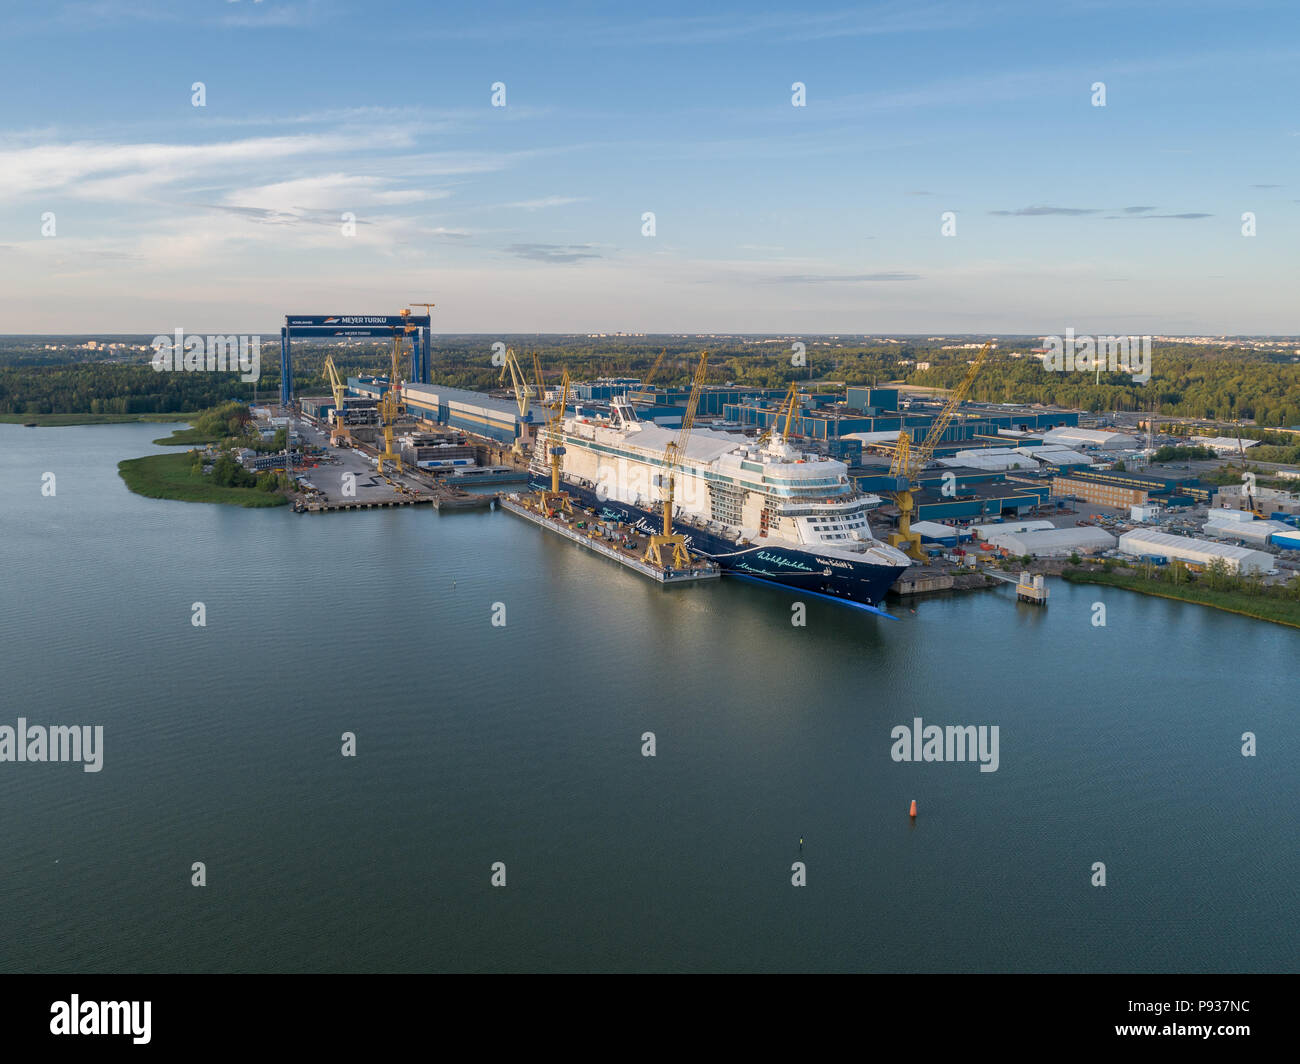 Paris, France - 6/7/2018 : Vue aérienne du chantier naval Meyer Turku avec Mein Schiff bateau de croisière en construction Banque D'Images